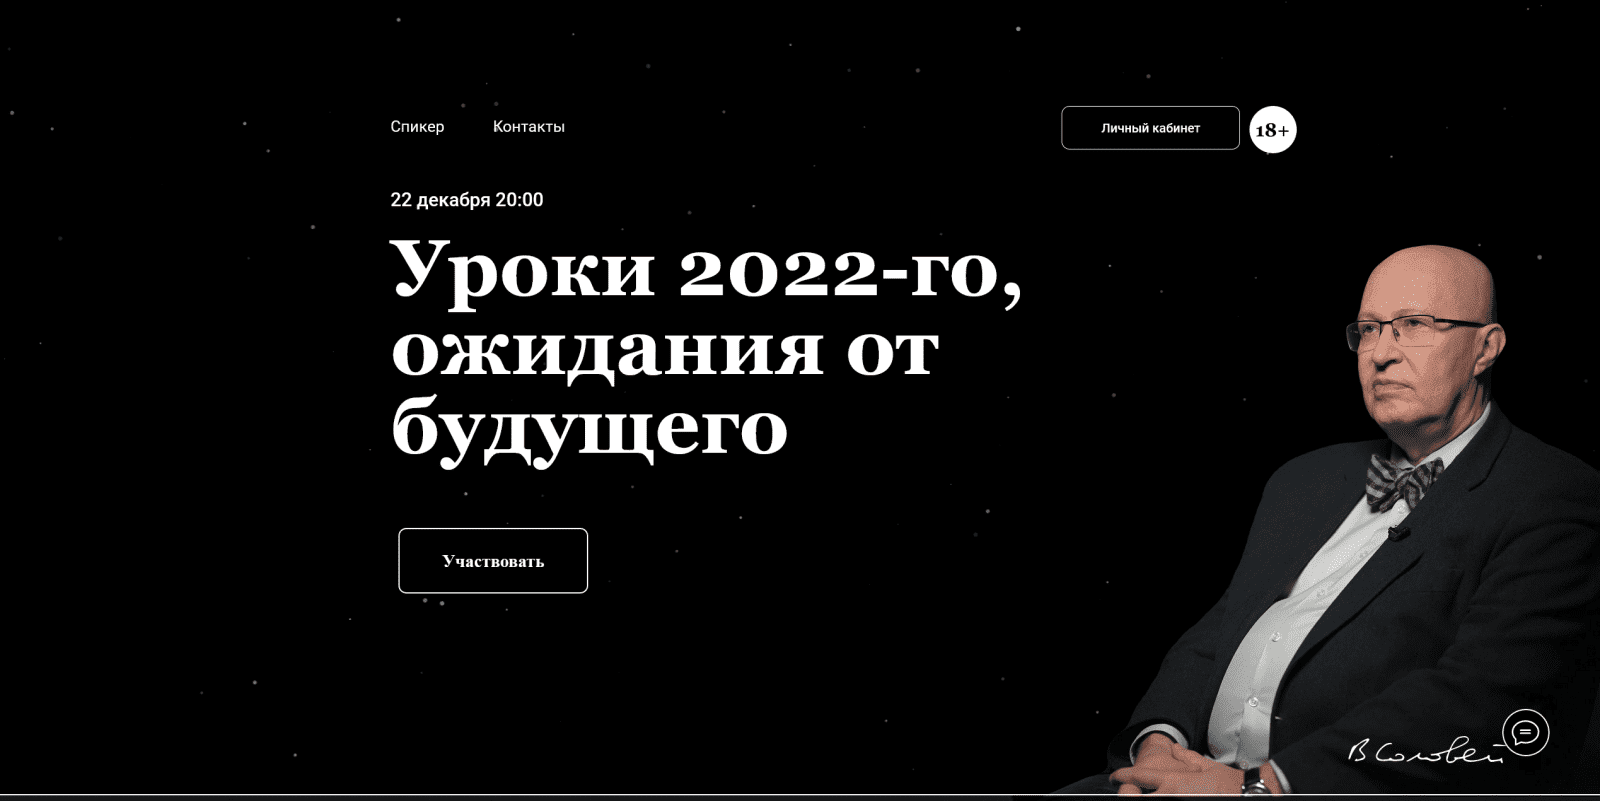 Изображение [Валерий Соловей] Уроки 2022-го. Ожидания от будущего. Встреча - 22.12.2022г. в посте 293660